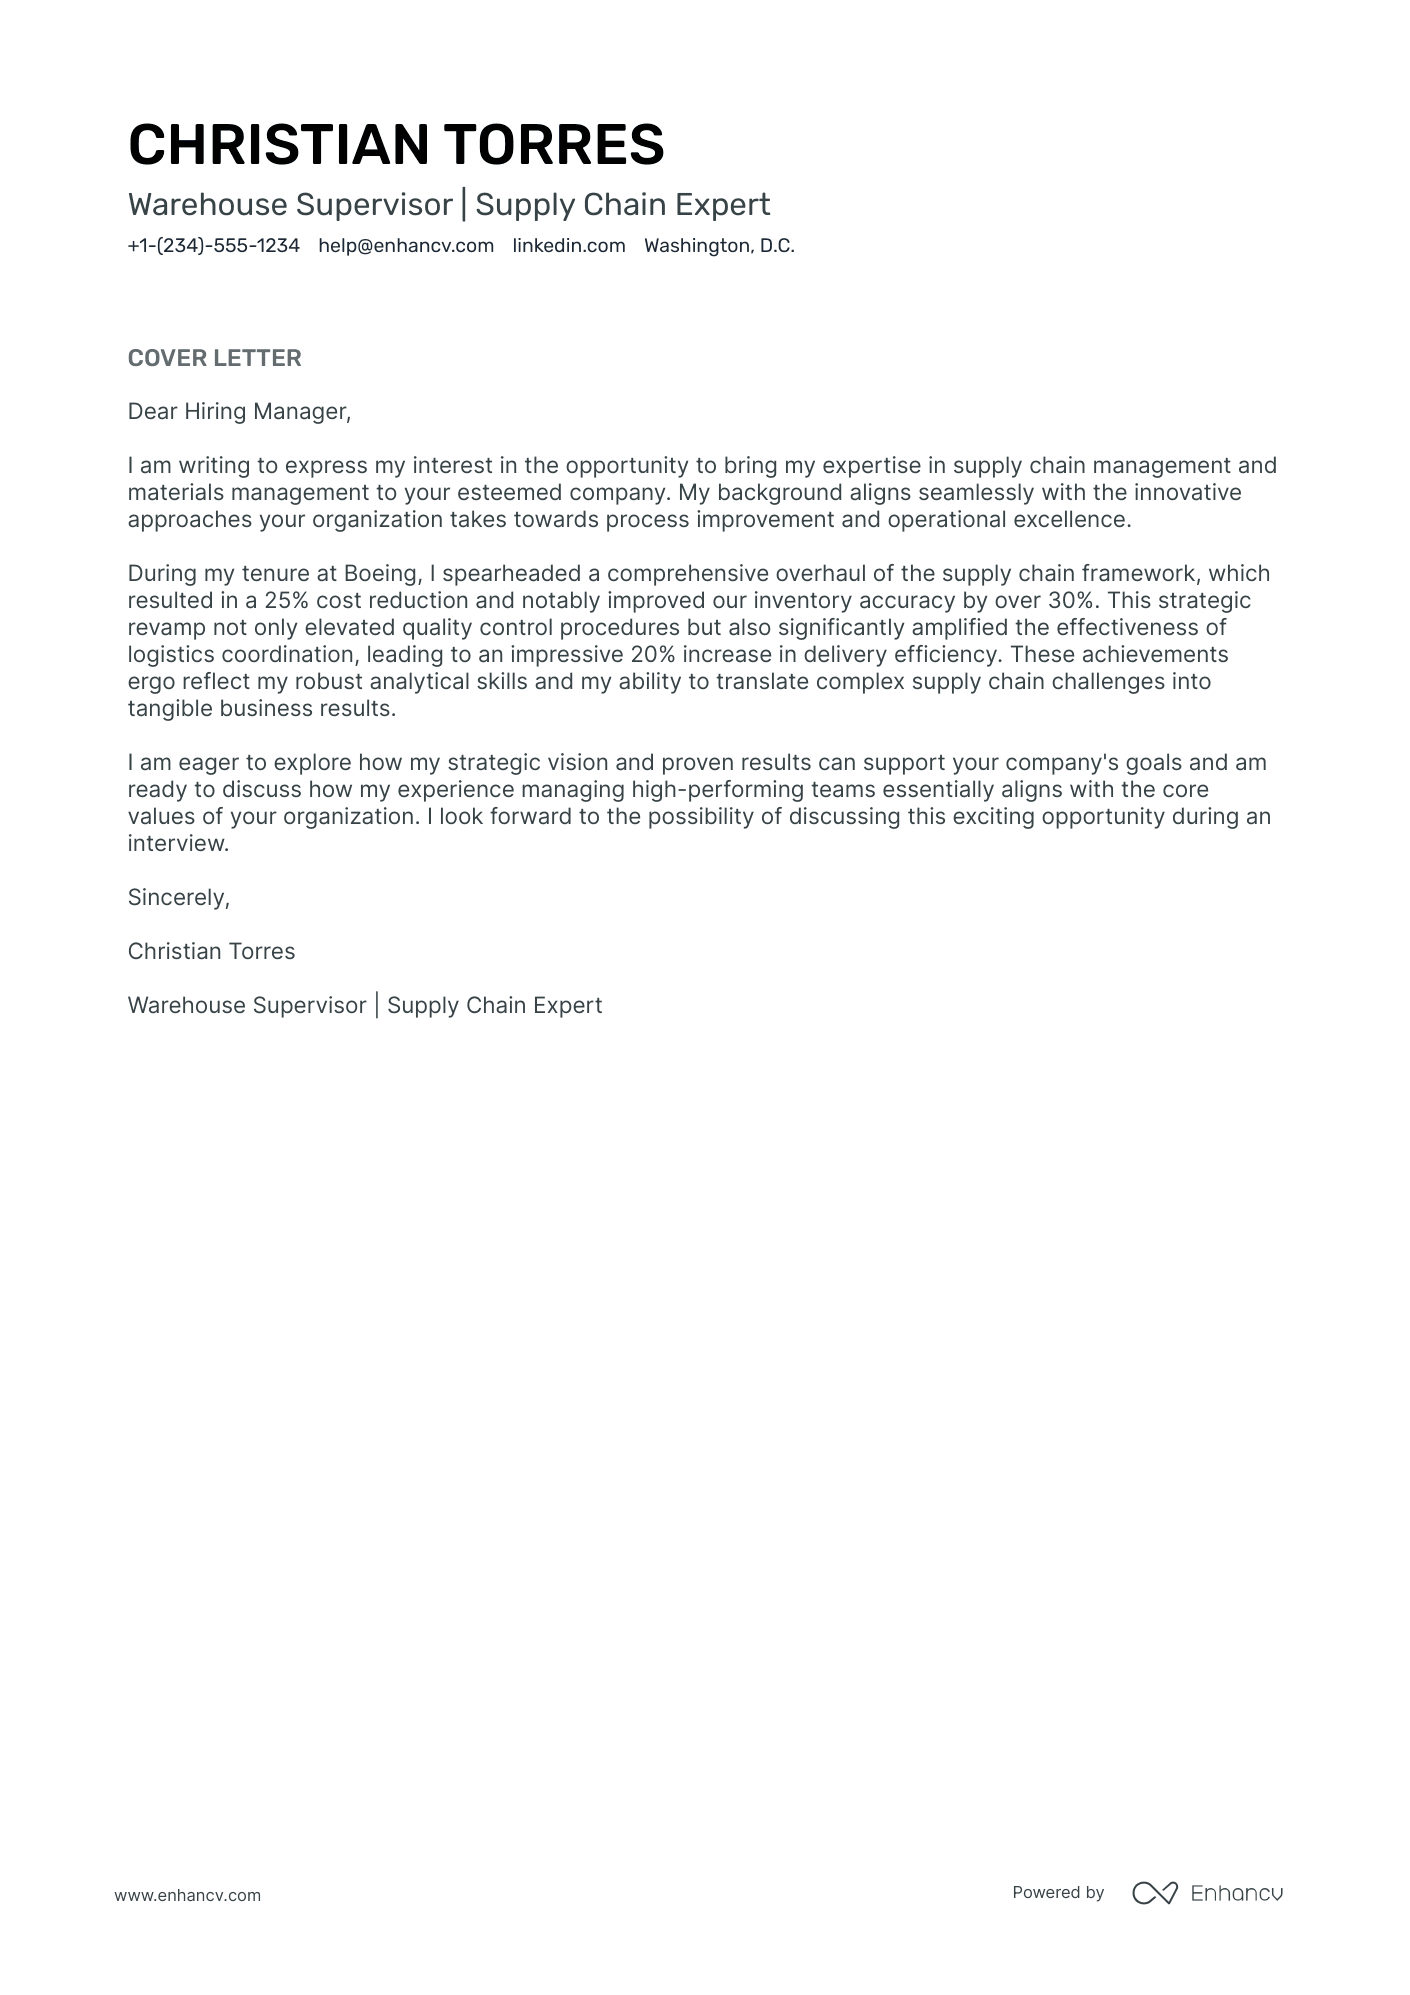 short cover letter for supervisor position